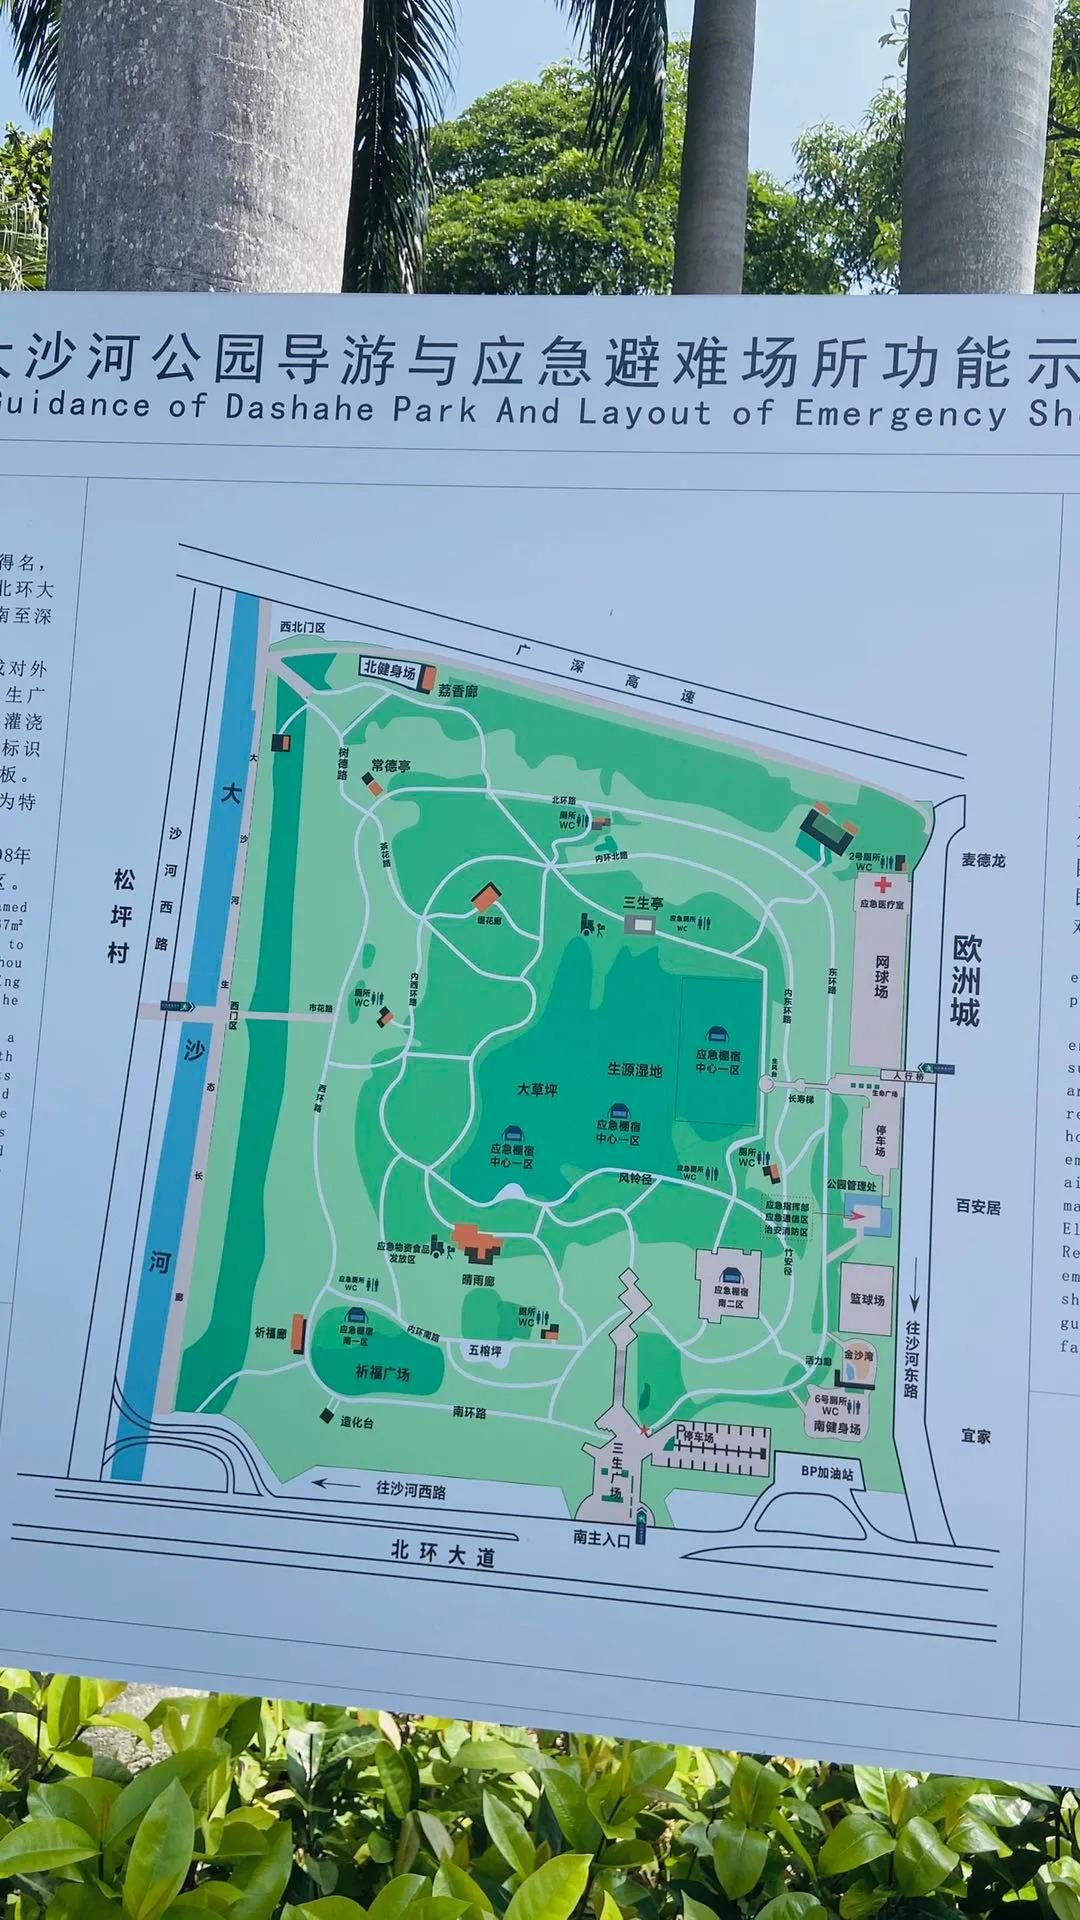 深圳最大公园-大沙河公园,周末节假日徒步游玩攻略